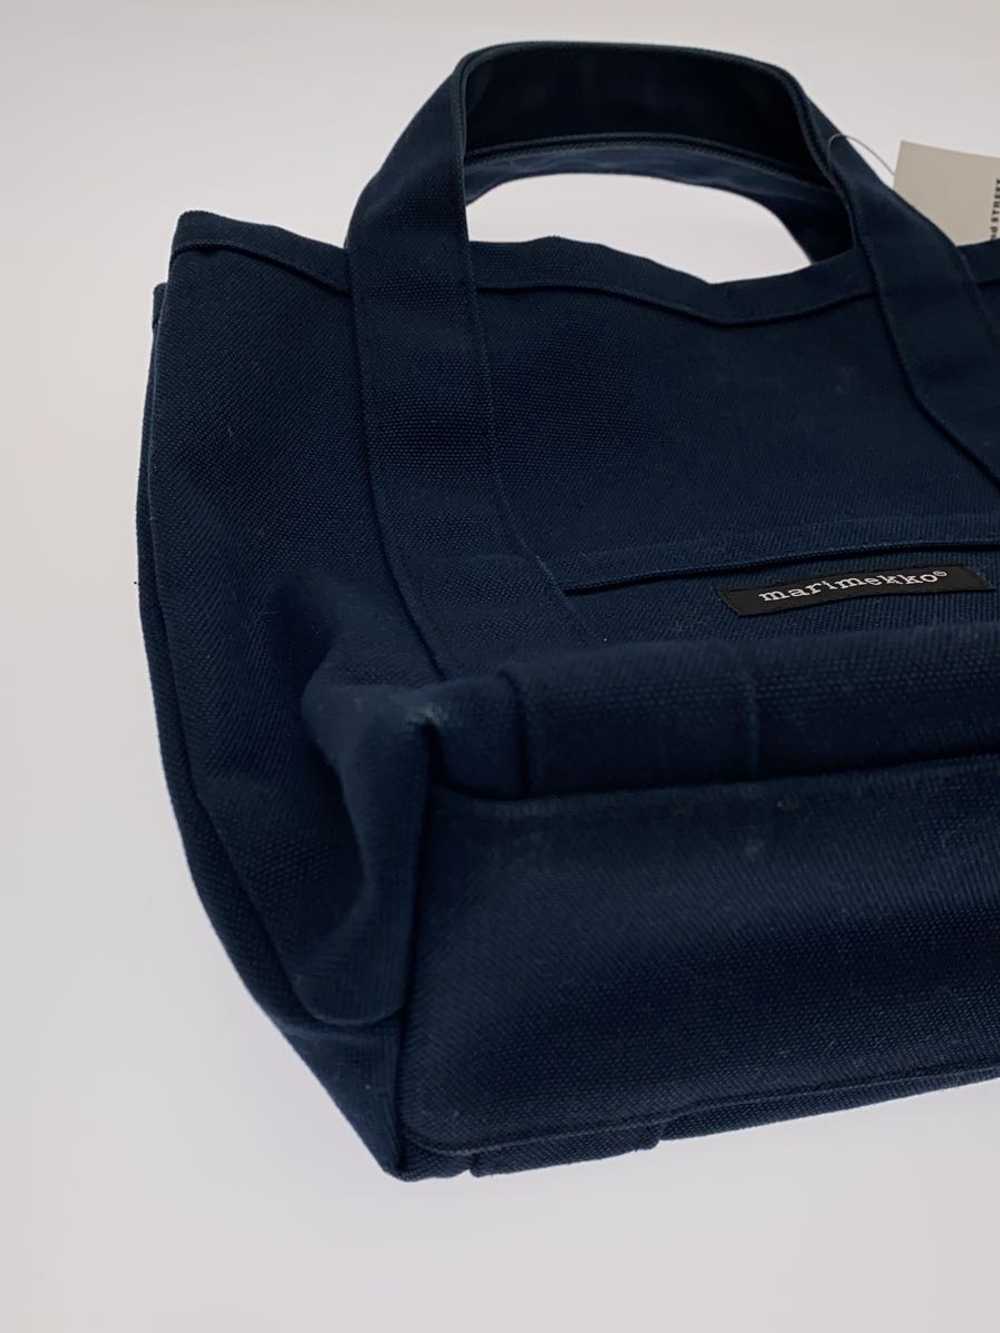 Marimekko Mini Tote Bag/Canvas/Nvy/Plain Bag - image 8